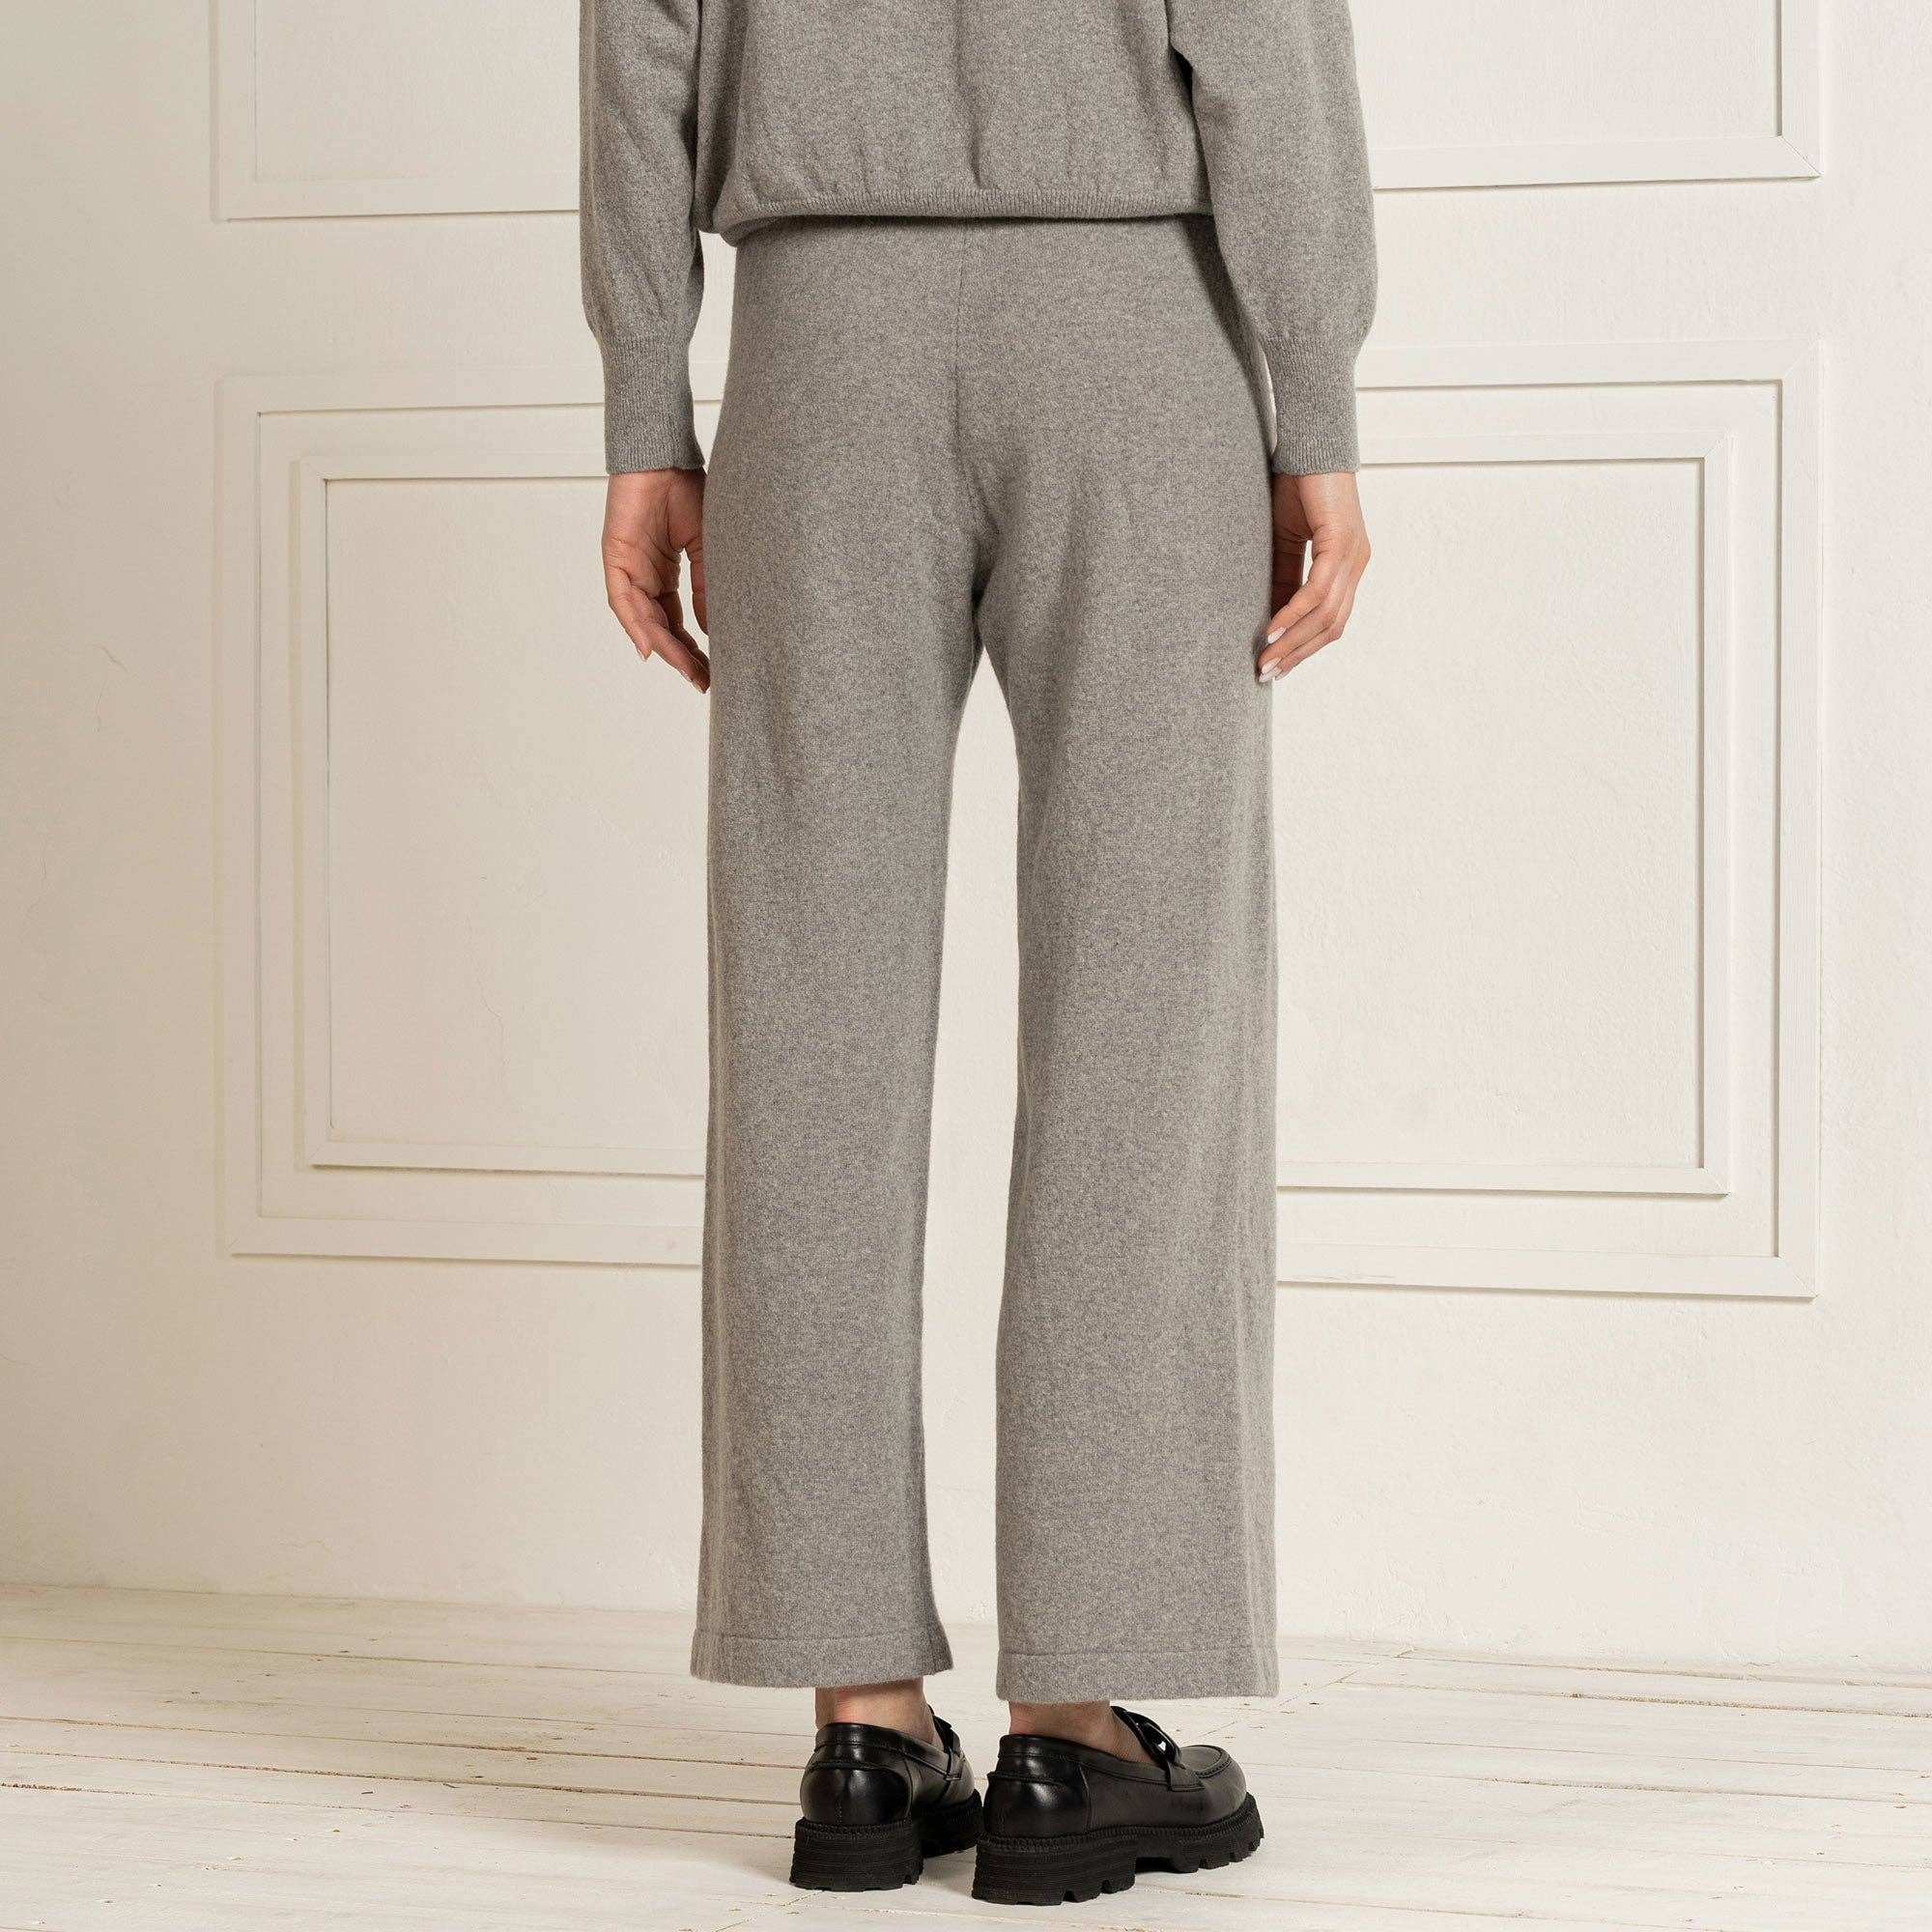 menique - Women's 100% Merino Wide Leg Pants Helsinki Light Gray: S / Light Gray